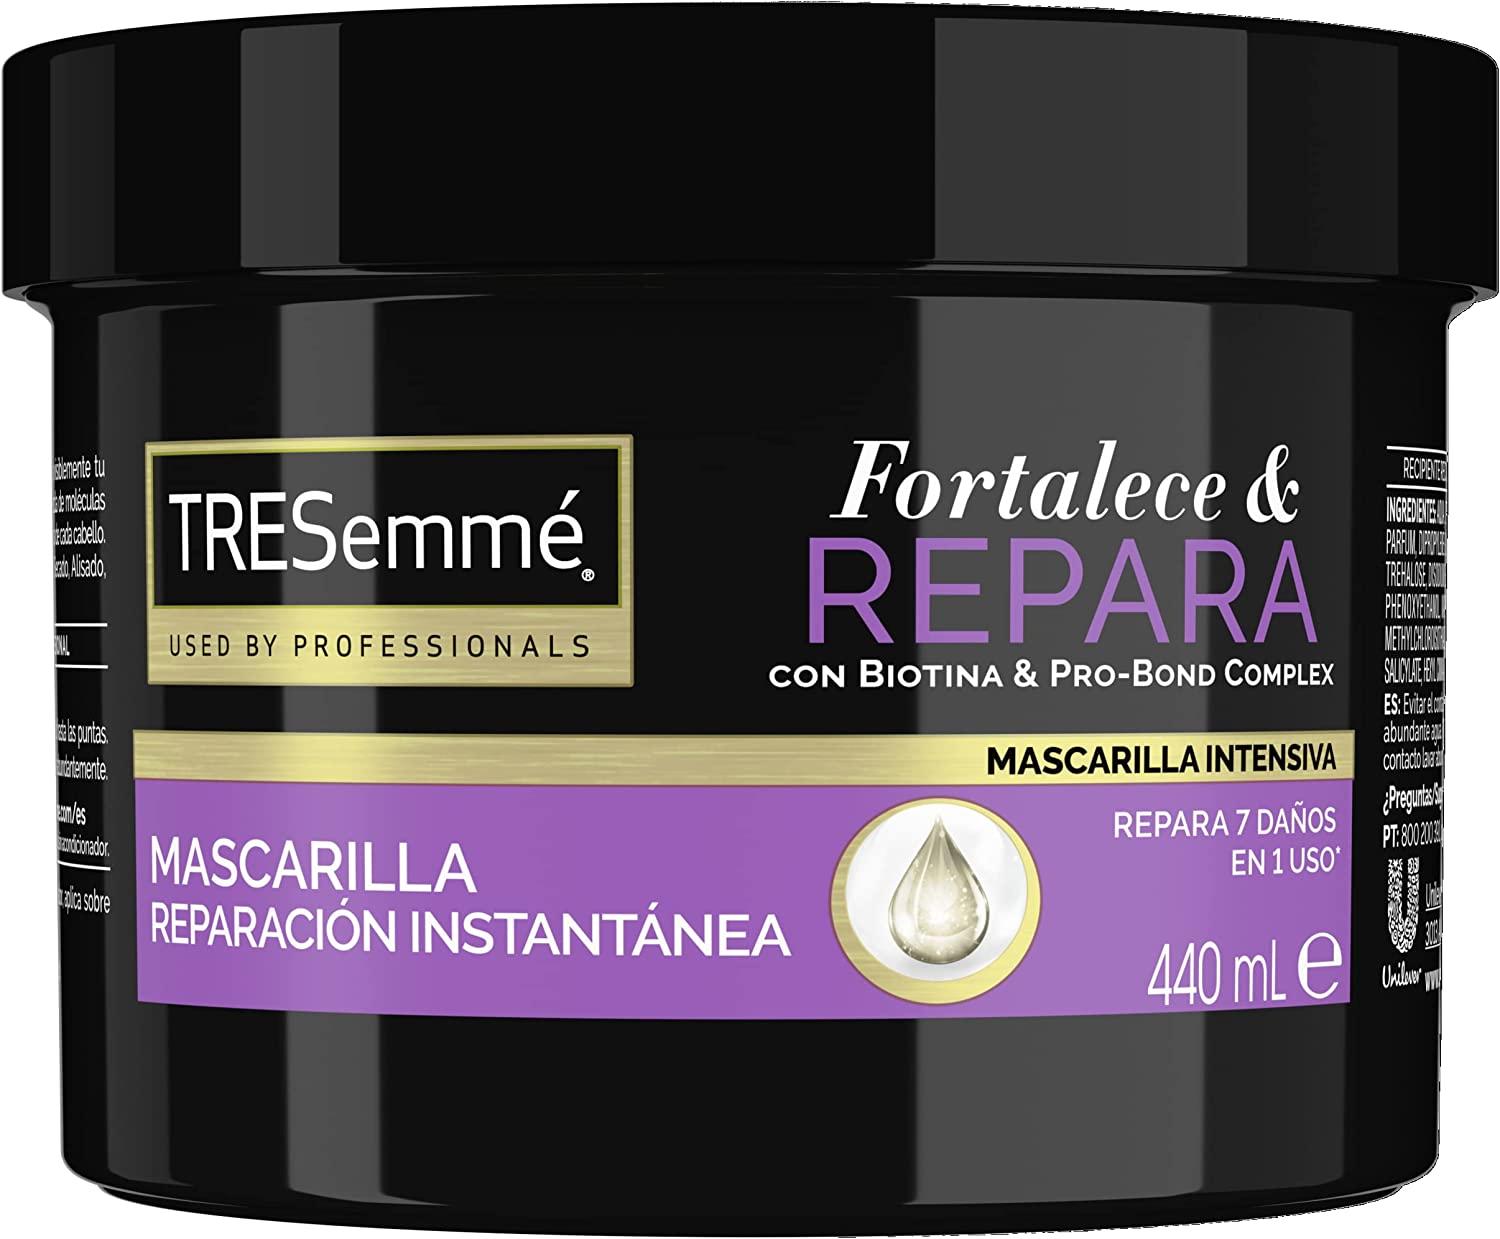 Tresemme Mascarilla Fortalece y Repara con Biotina